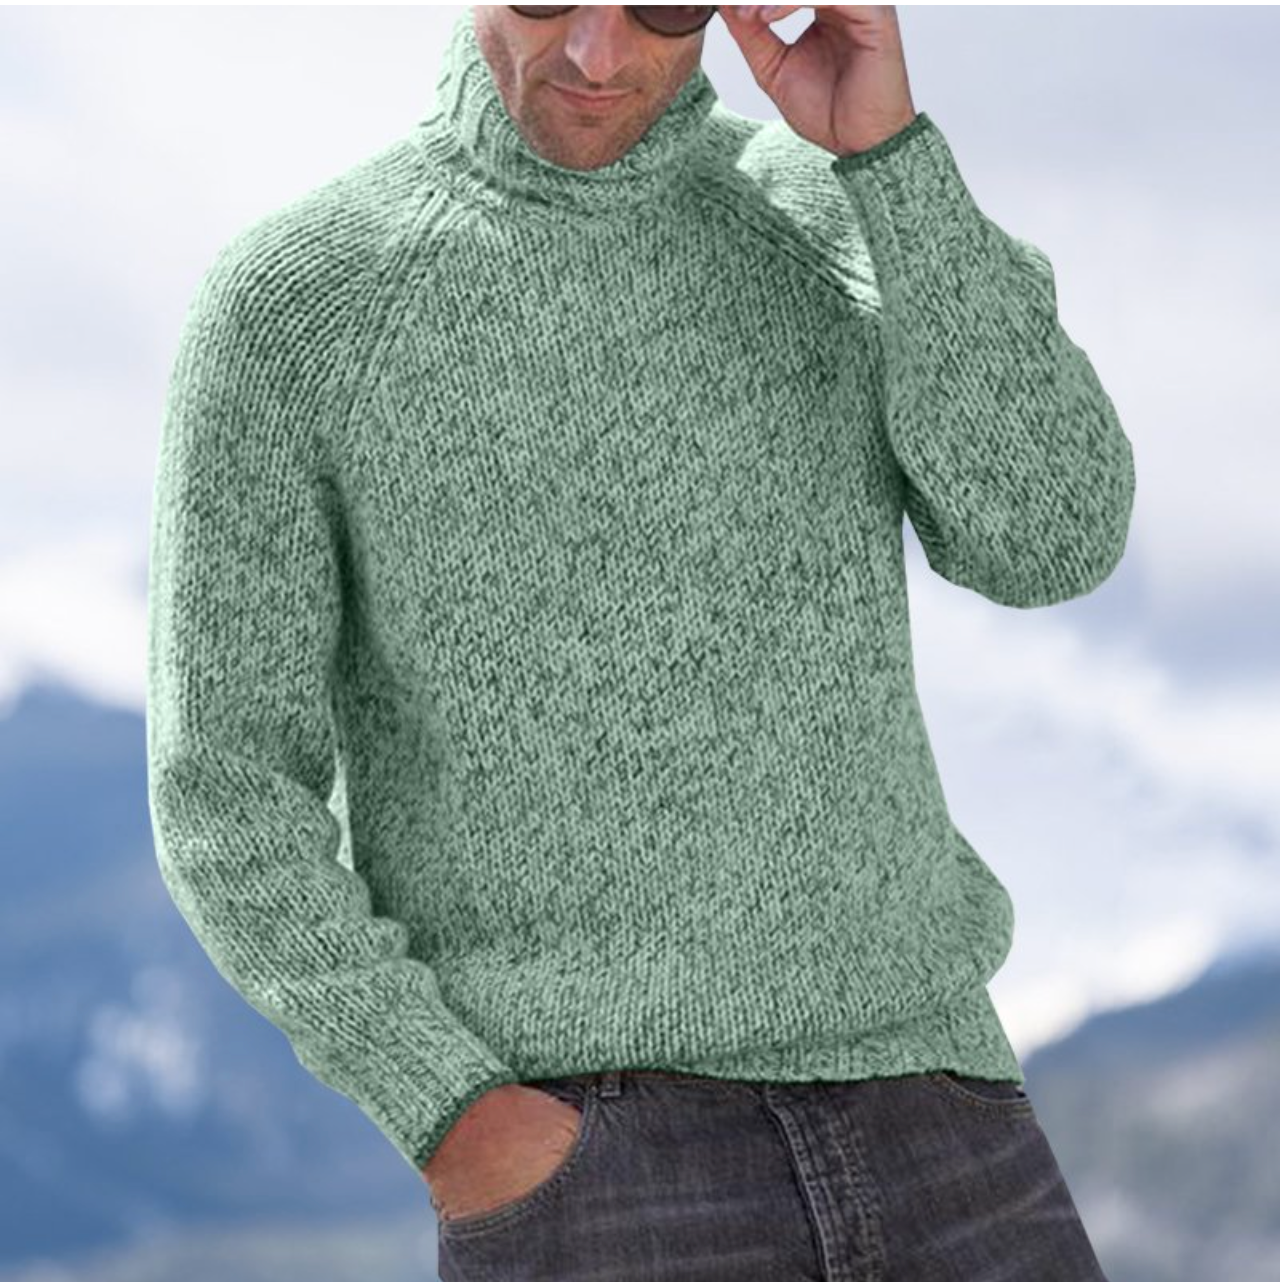 Buitenland Pakistaans auditie The Cashmere Sweater | Dé Ideale Wintertrui! – Vilano Amsterdam